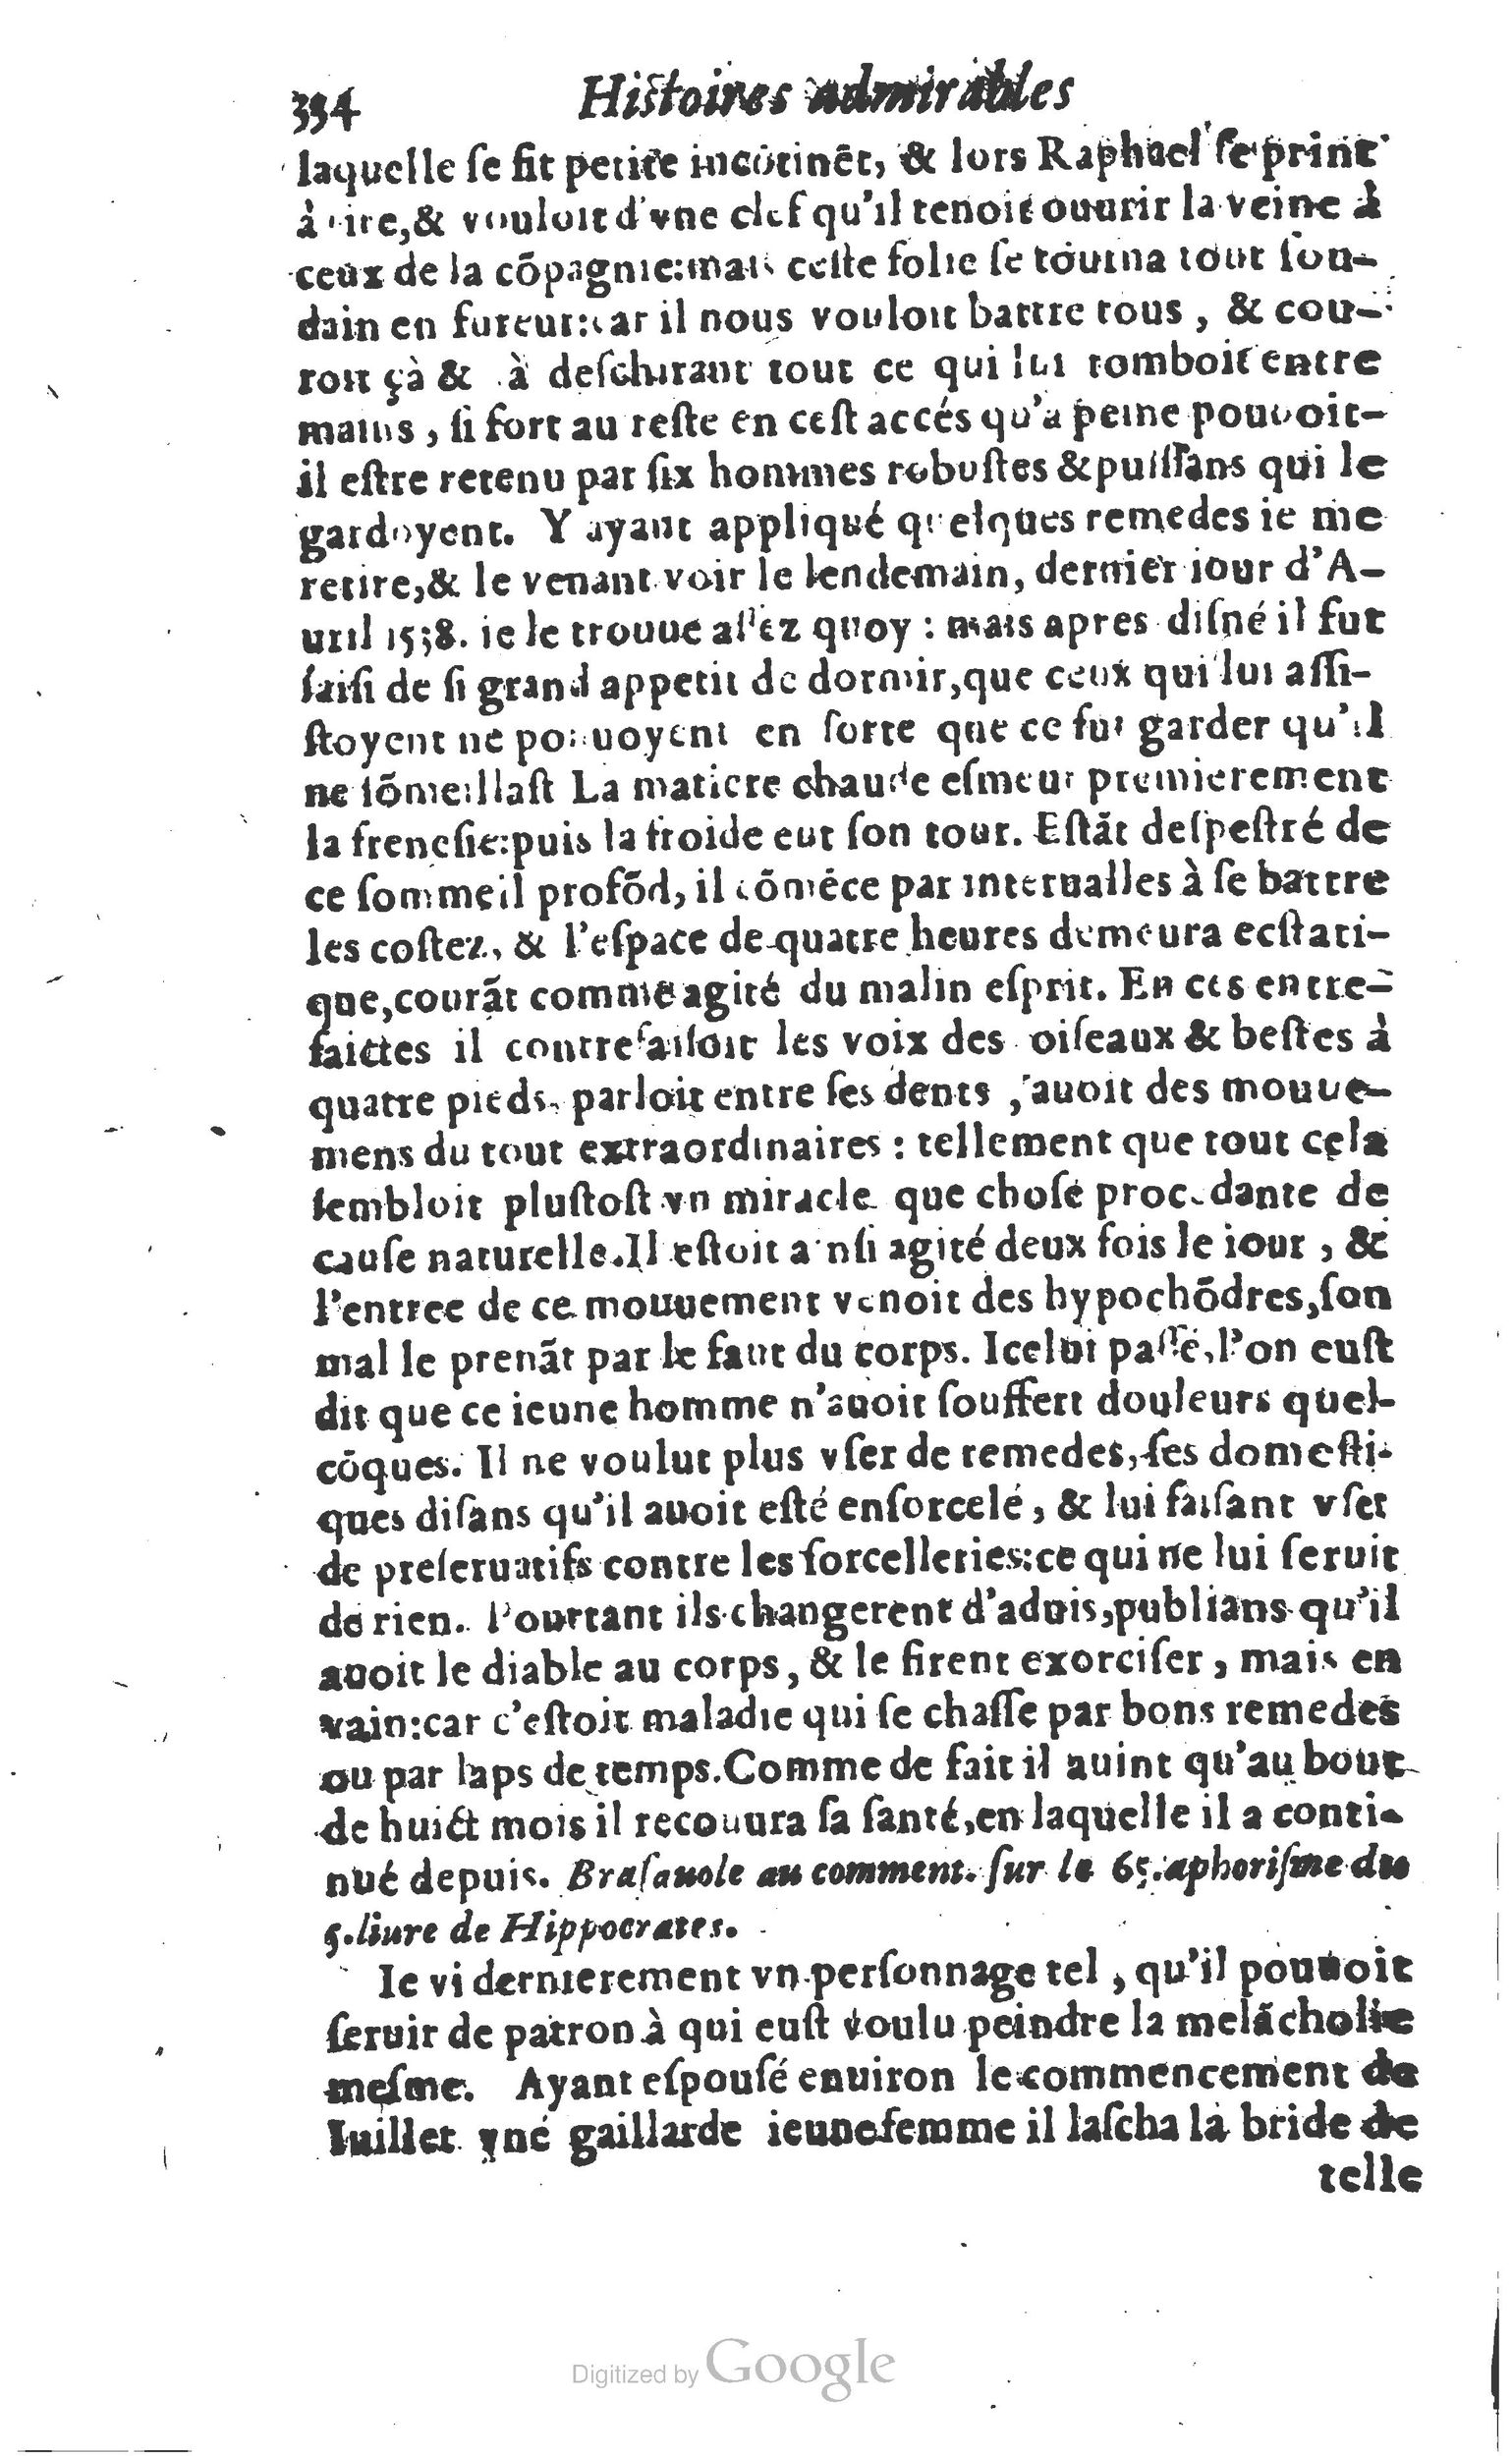 1610 Trésor d’histoires admirables et mémorables de nostre temps Marceau Princeton_Page_0355.jpg